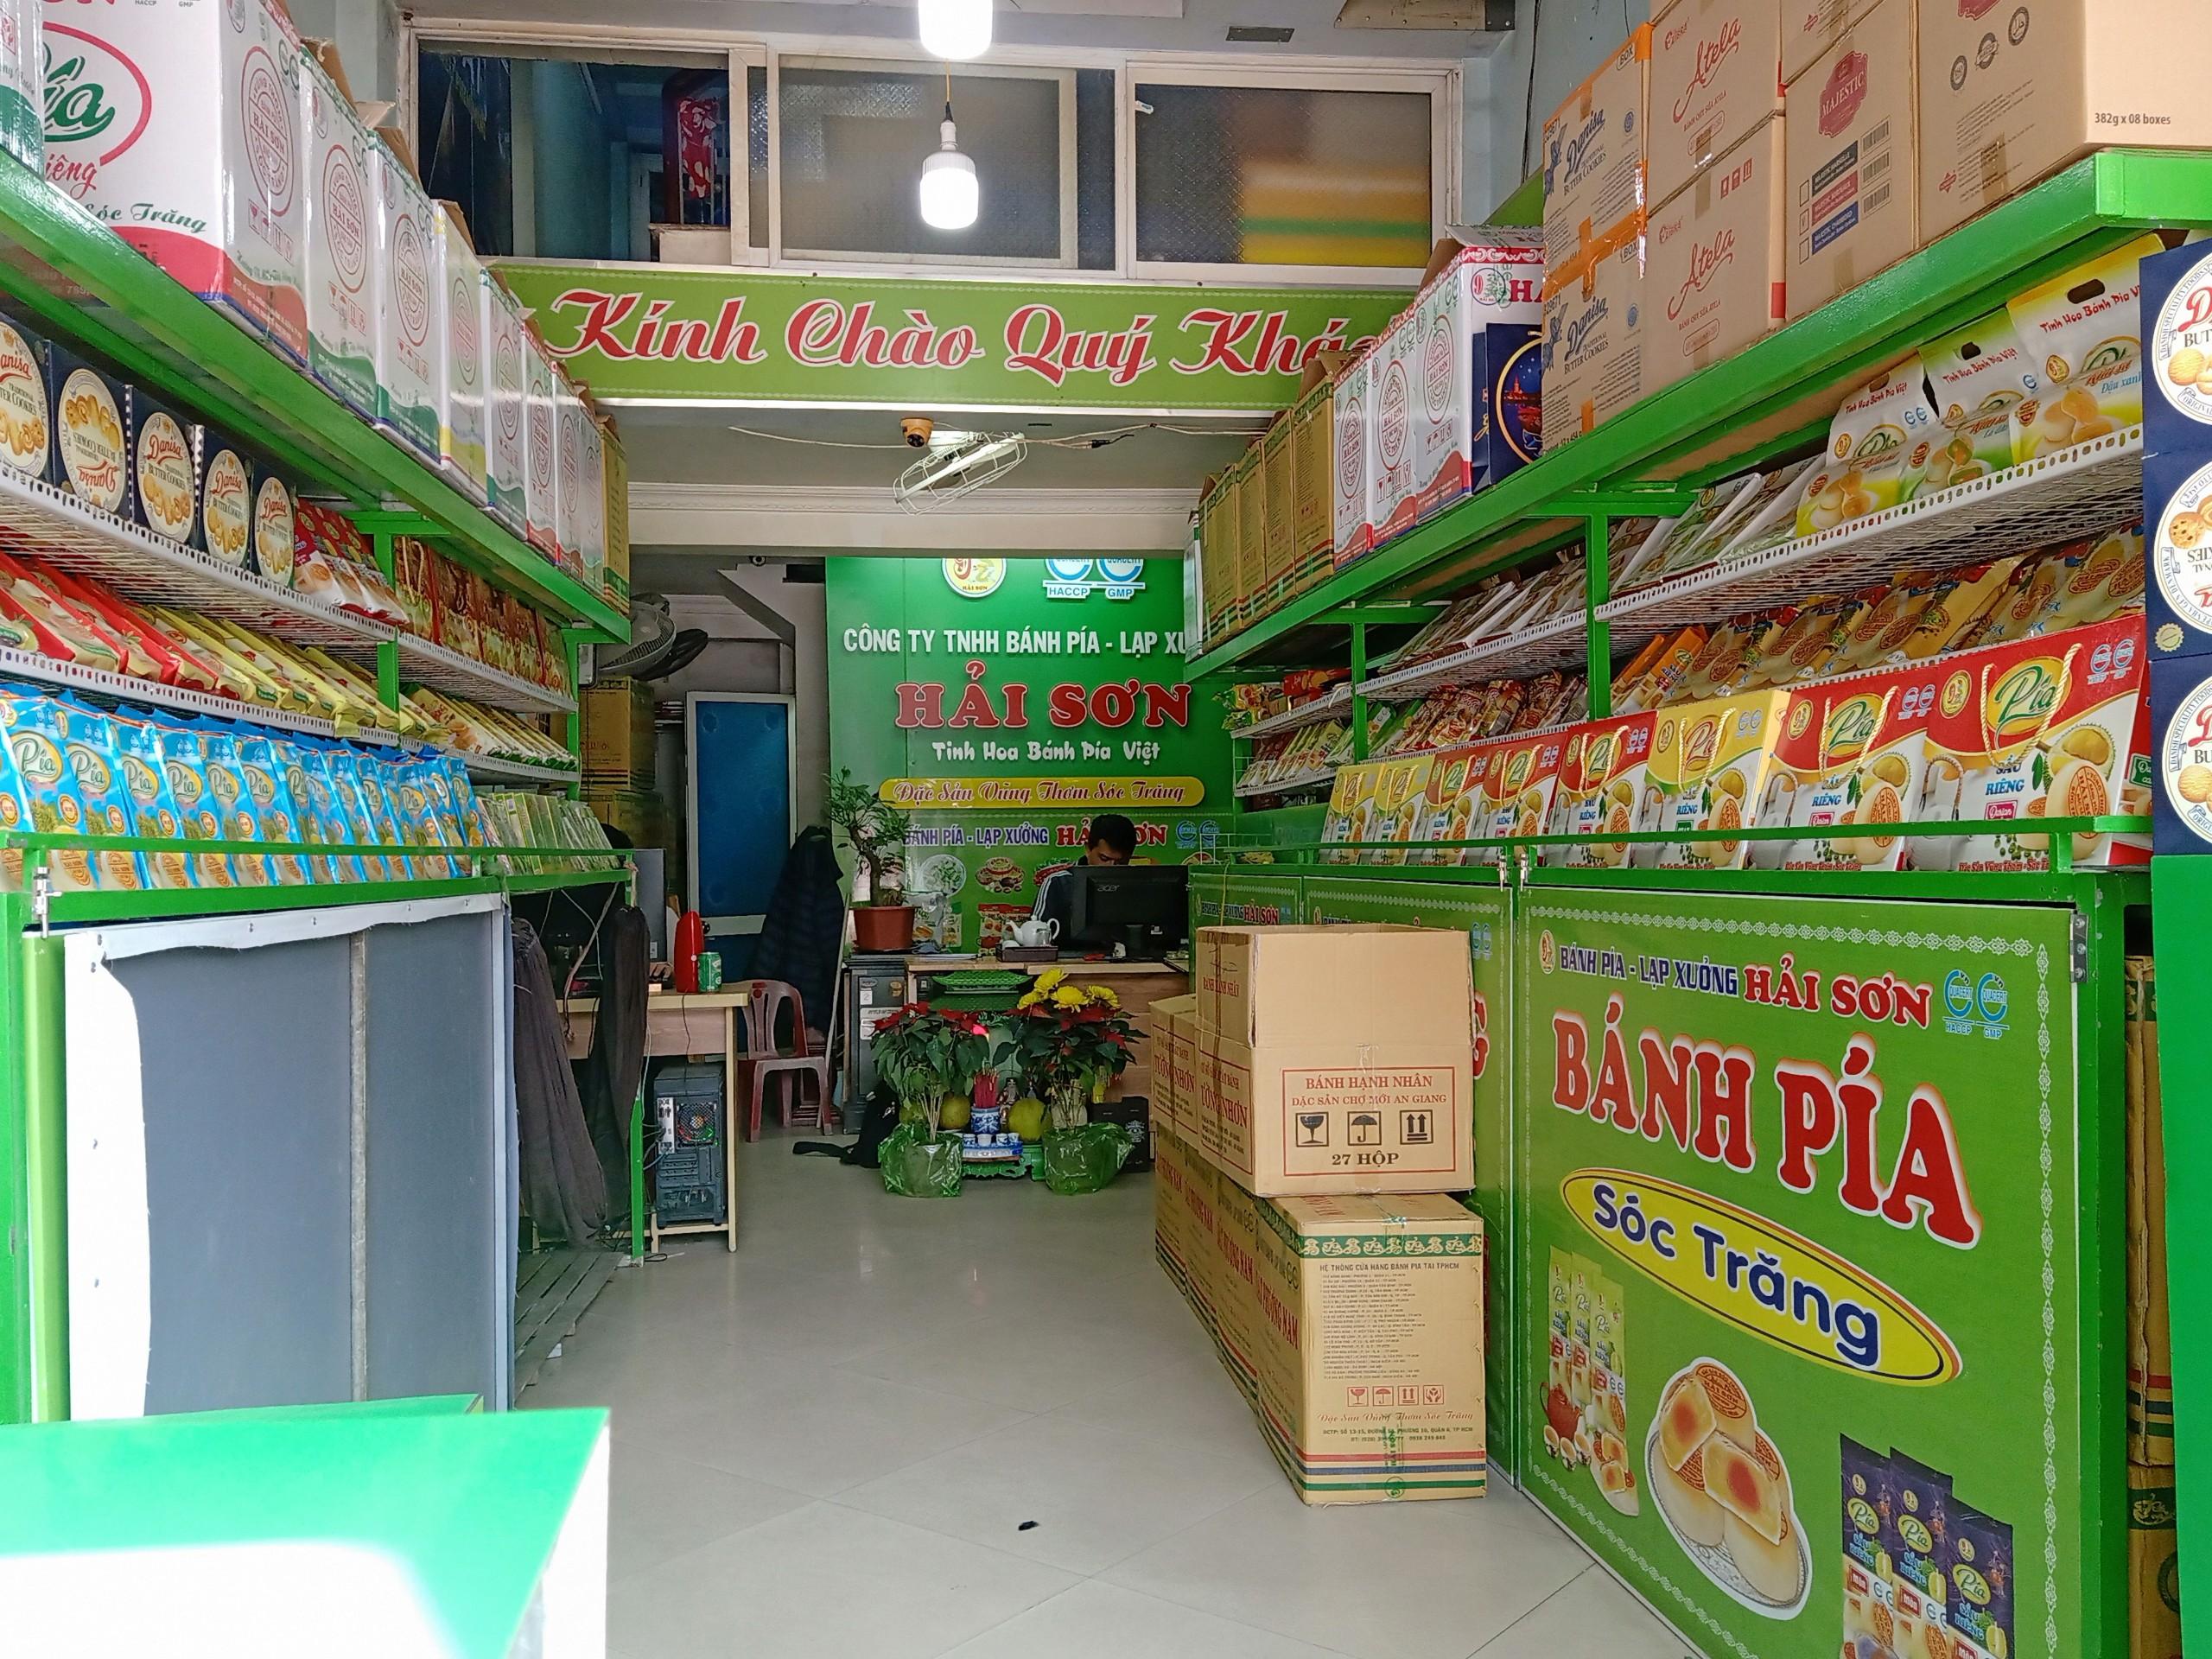 Bánh Pía Sầu Riêng - Hải Sơn